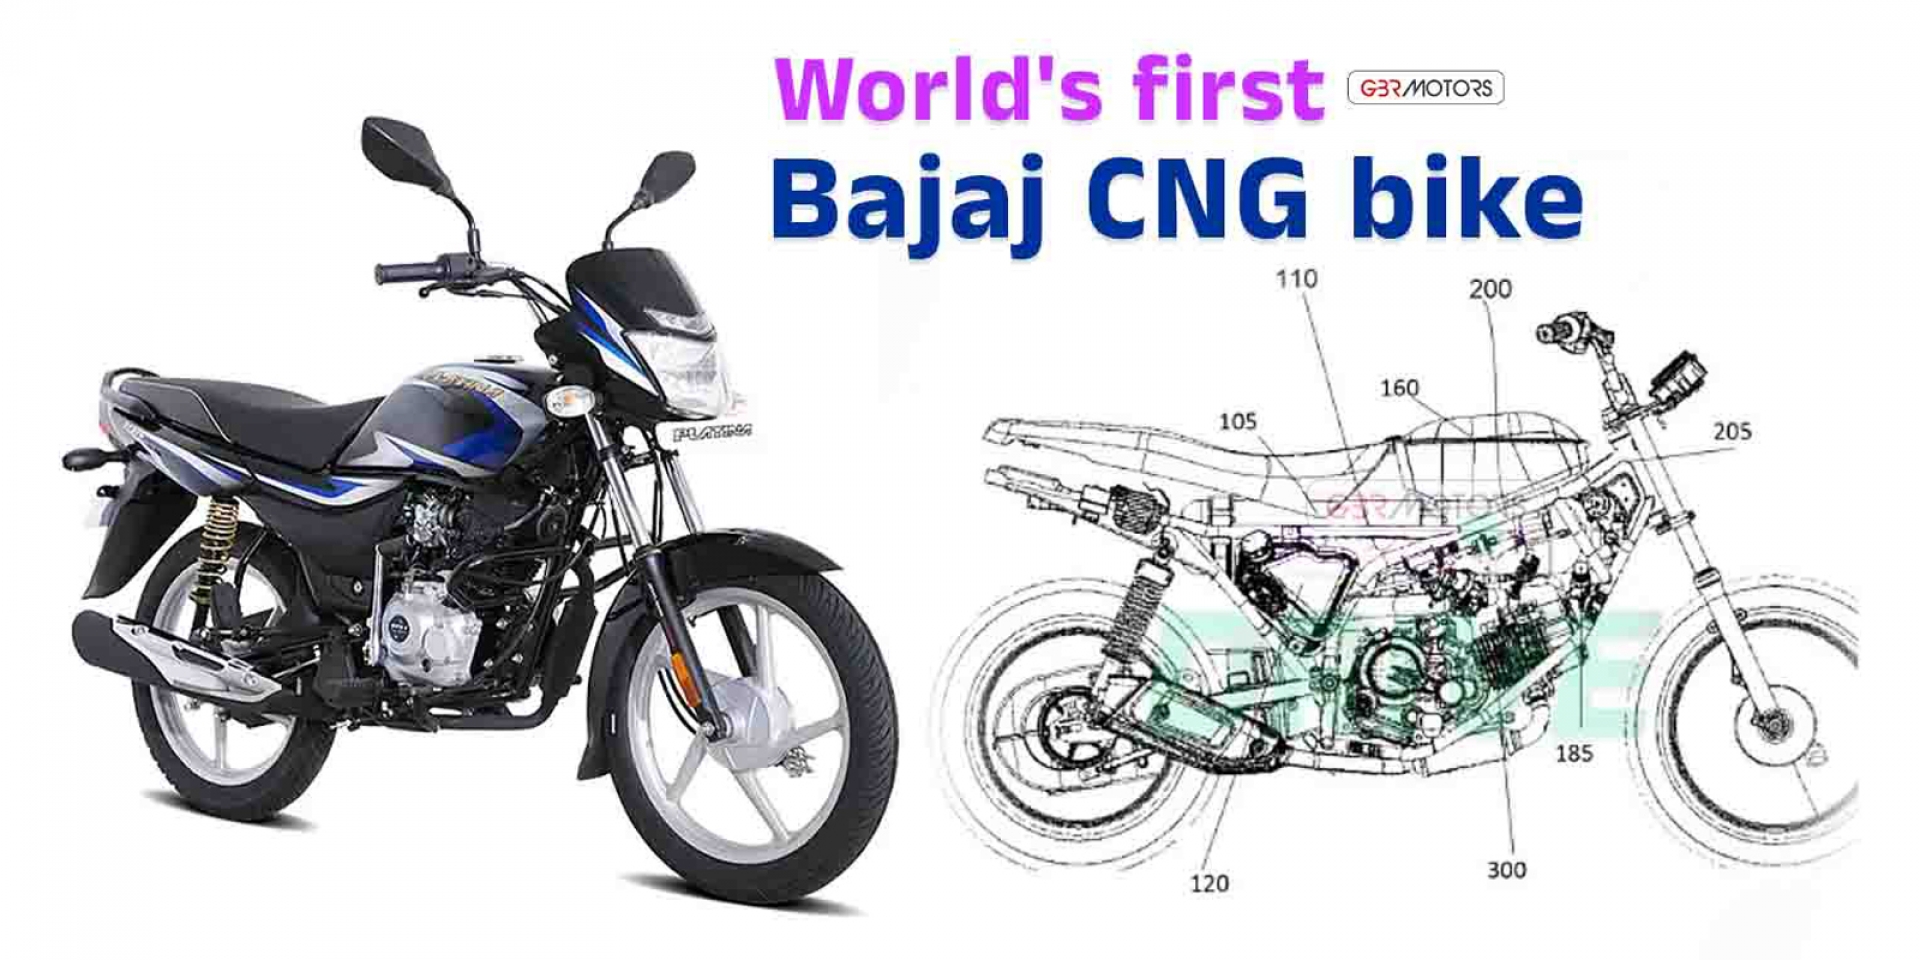 壓縮天然氣催動，經濟實惠！印度 Bajaj CNG 車款專利曝光